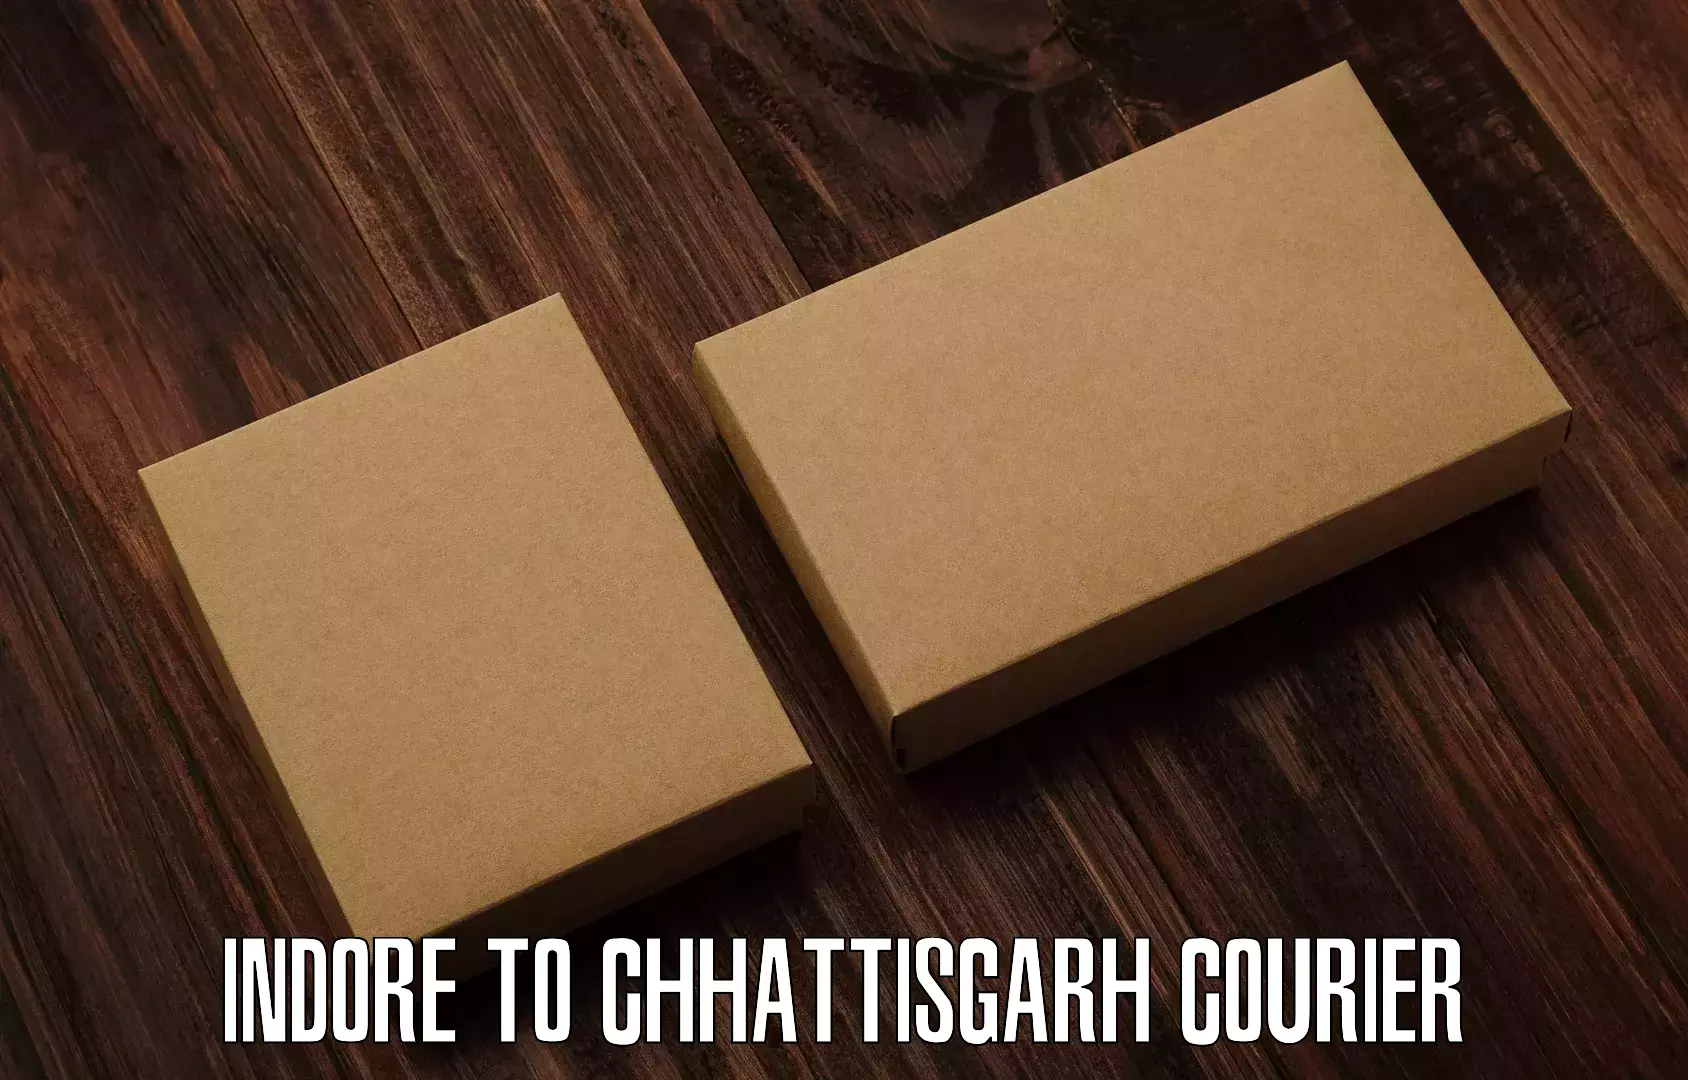 Efficient freight transportation Indore to Bijapur Chhattisgarh